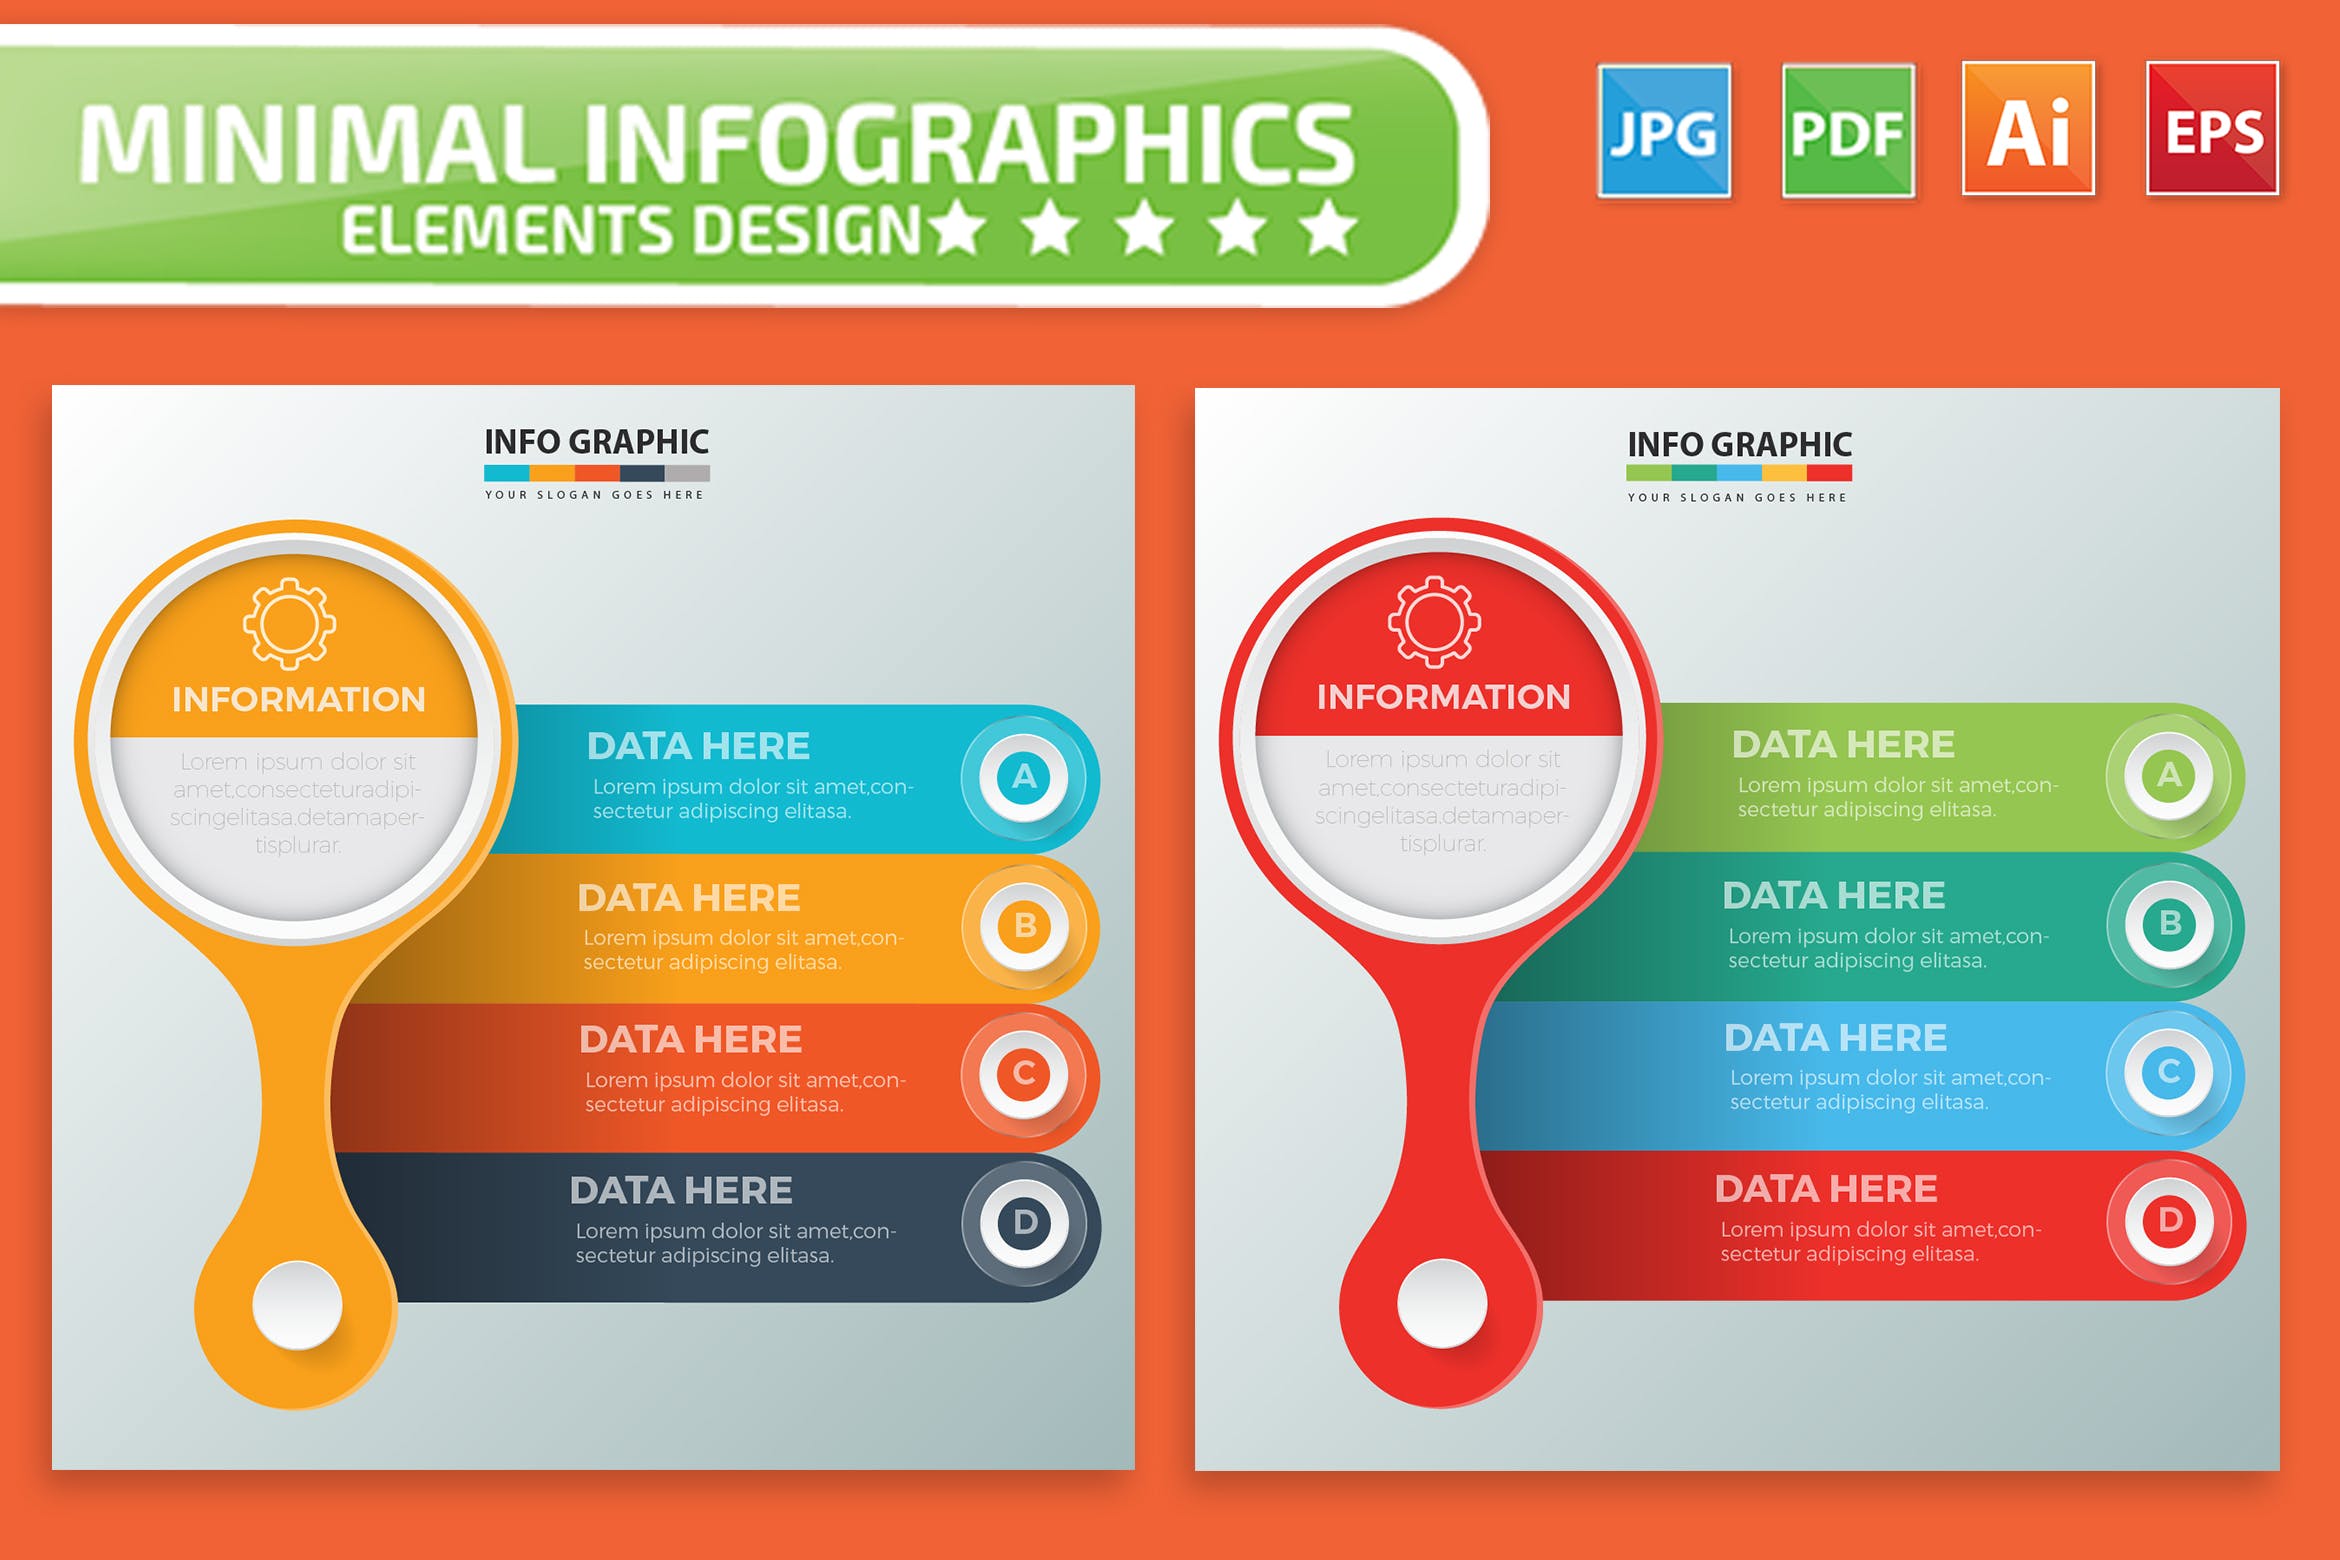 要点说明/重要特征信息图表矢量图形16设计素材网精选素材v1 Infographic Elements Design插图